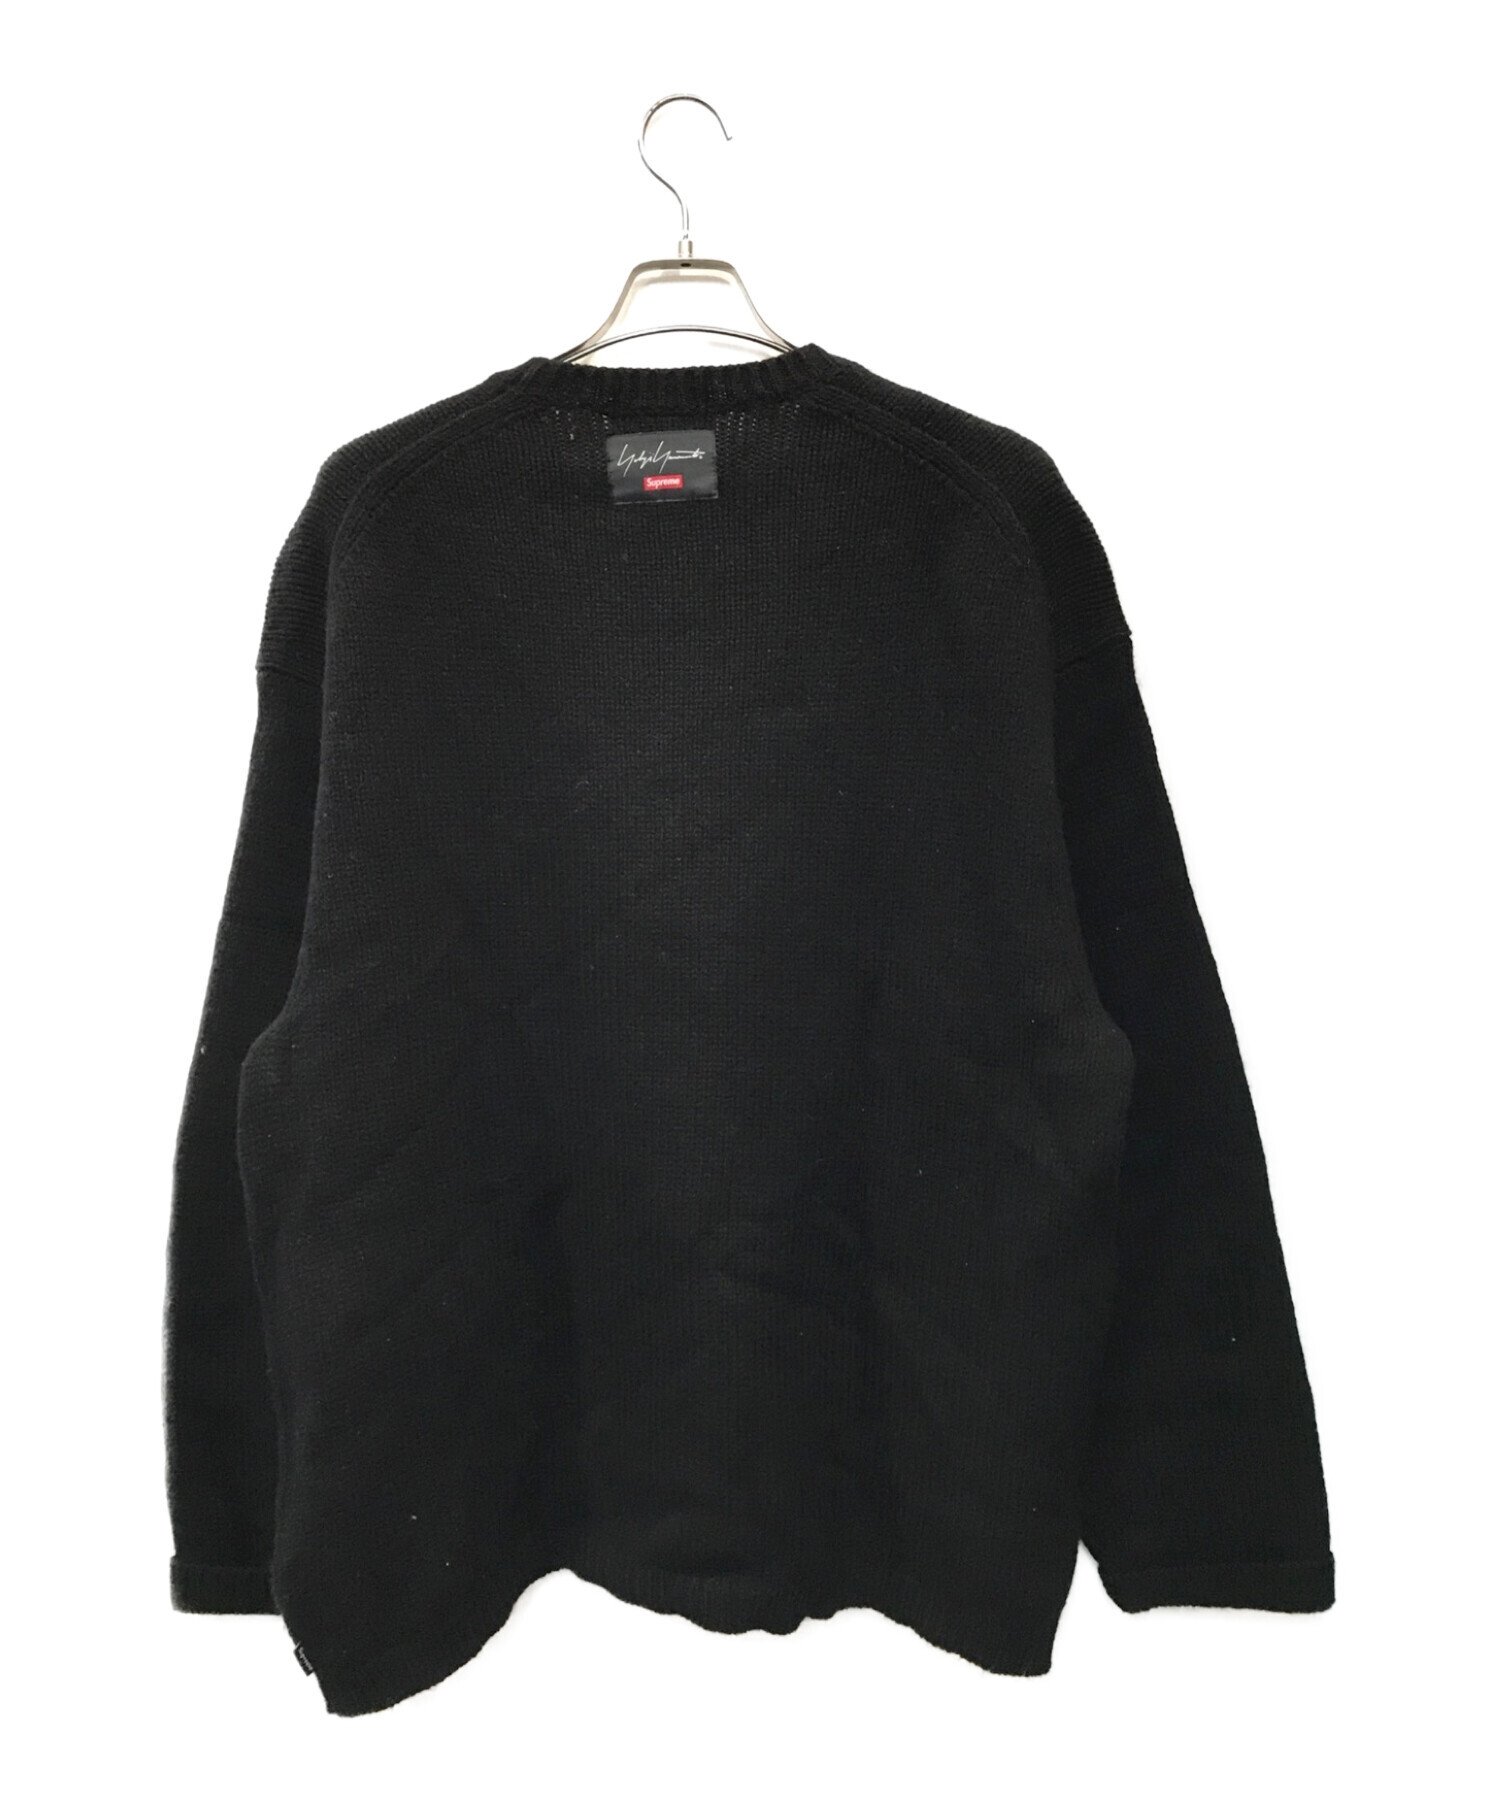 Supreme (シュプリーム) YOHJI YAMAMOTO (ヨウジヤマモト) 20AW Sweater ブラック サイズ:XL